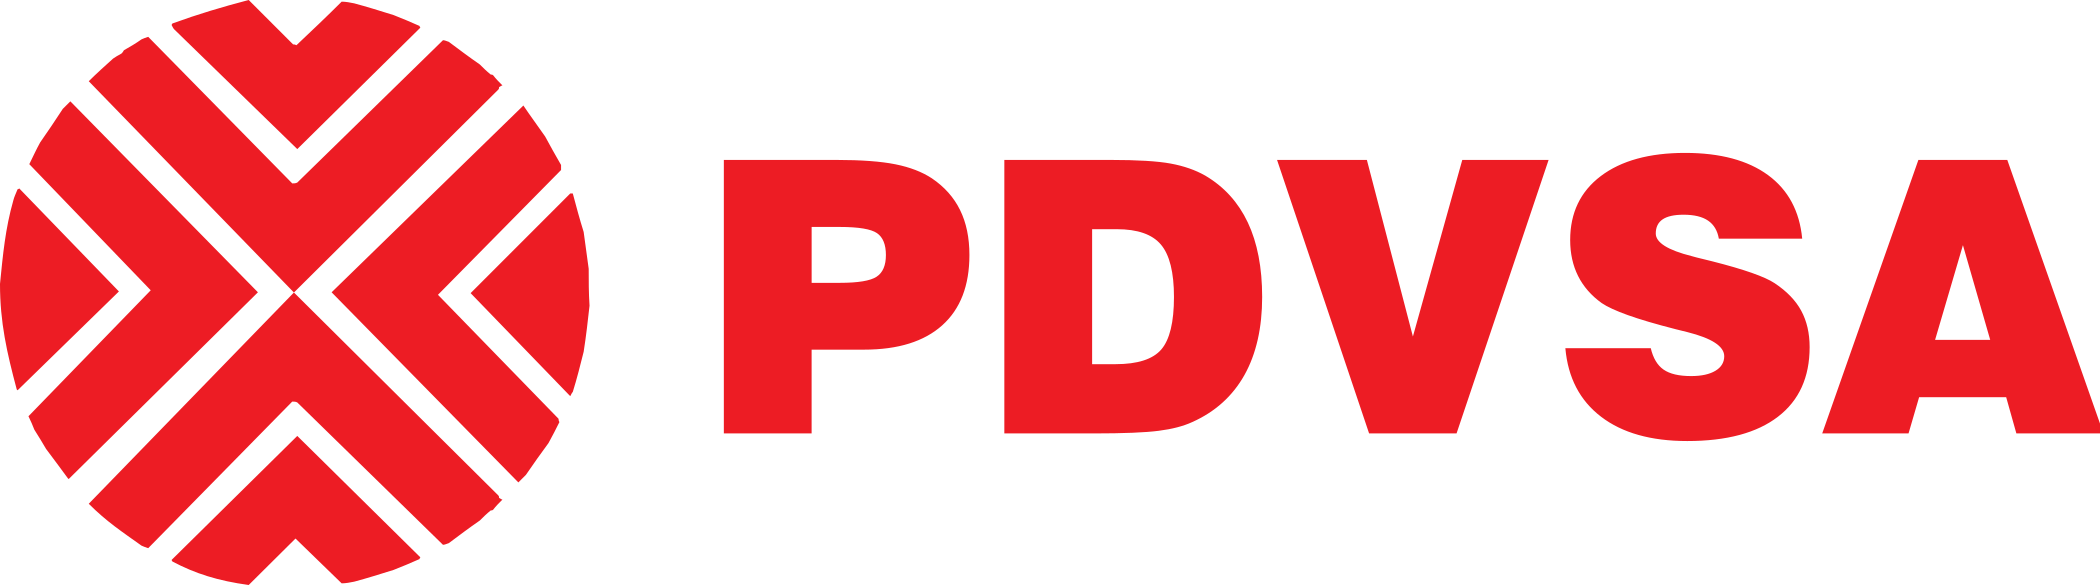 pdvsa logo 1 - PDVSA Logo